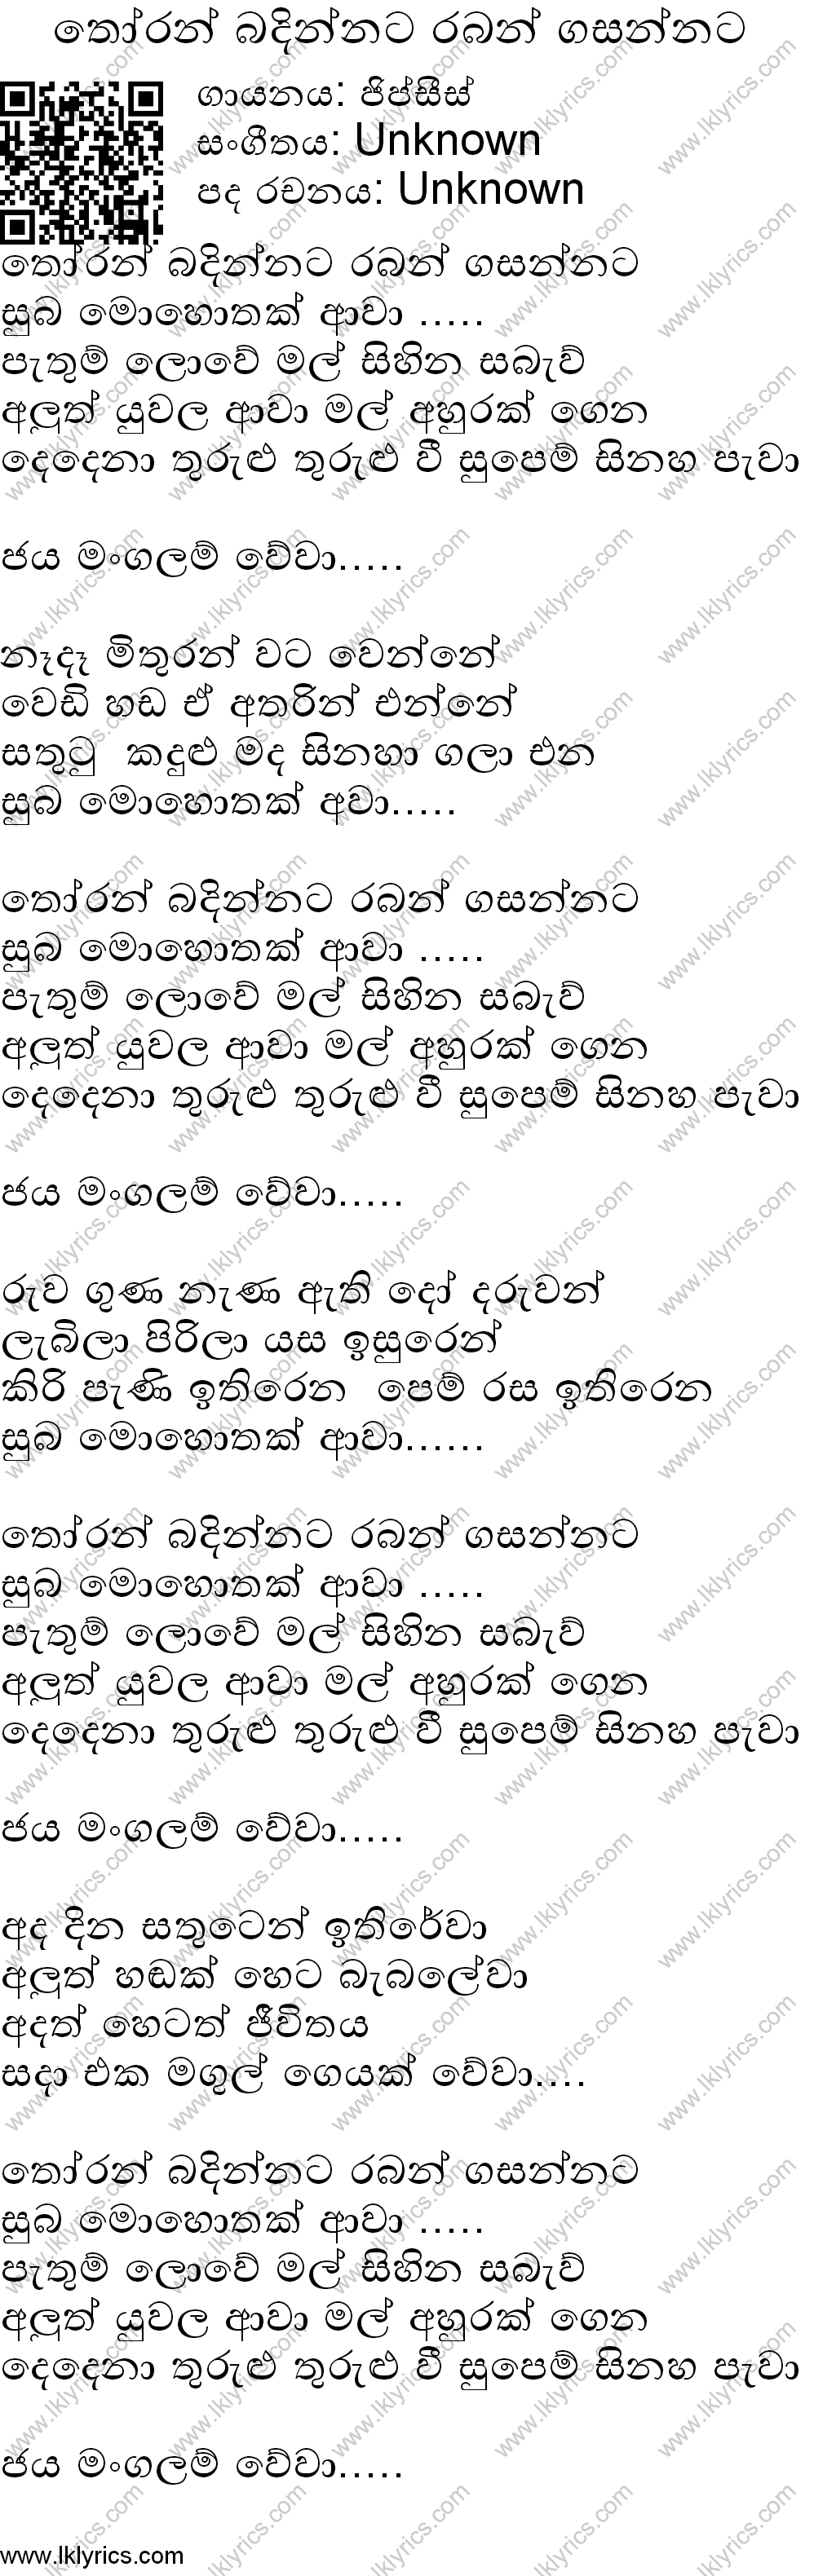 Thoran Badinnata Raban Gasannata Lyrics